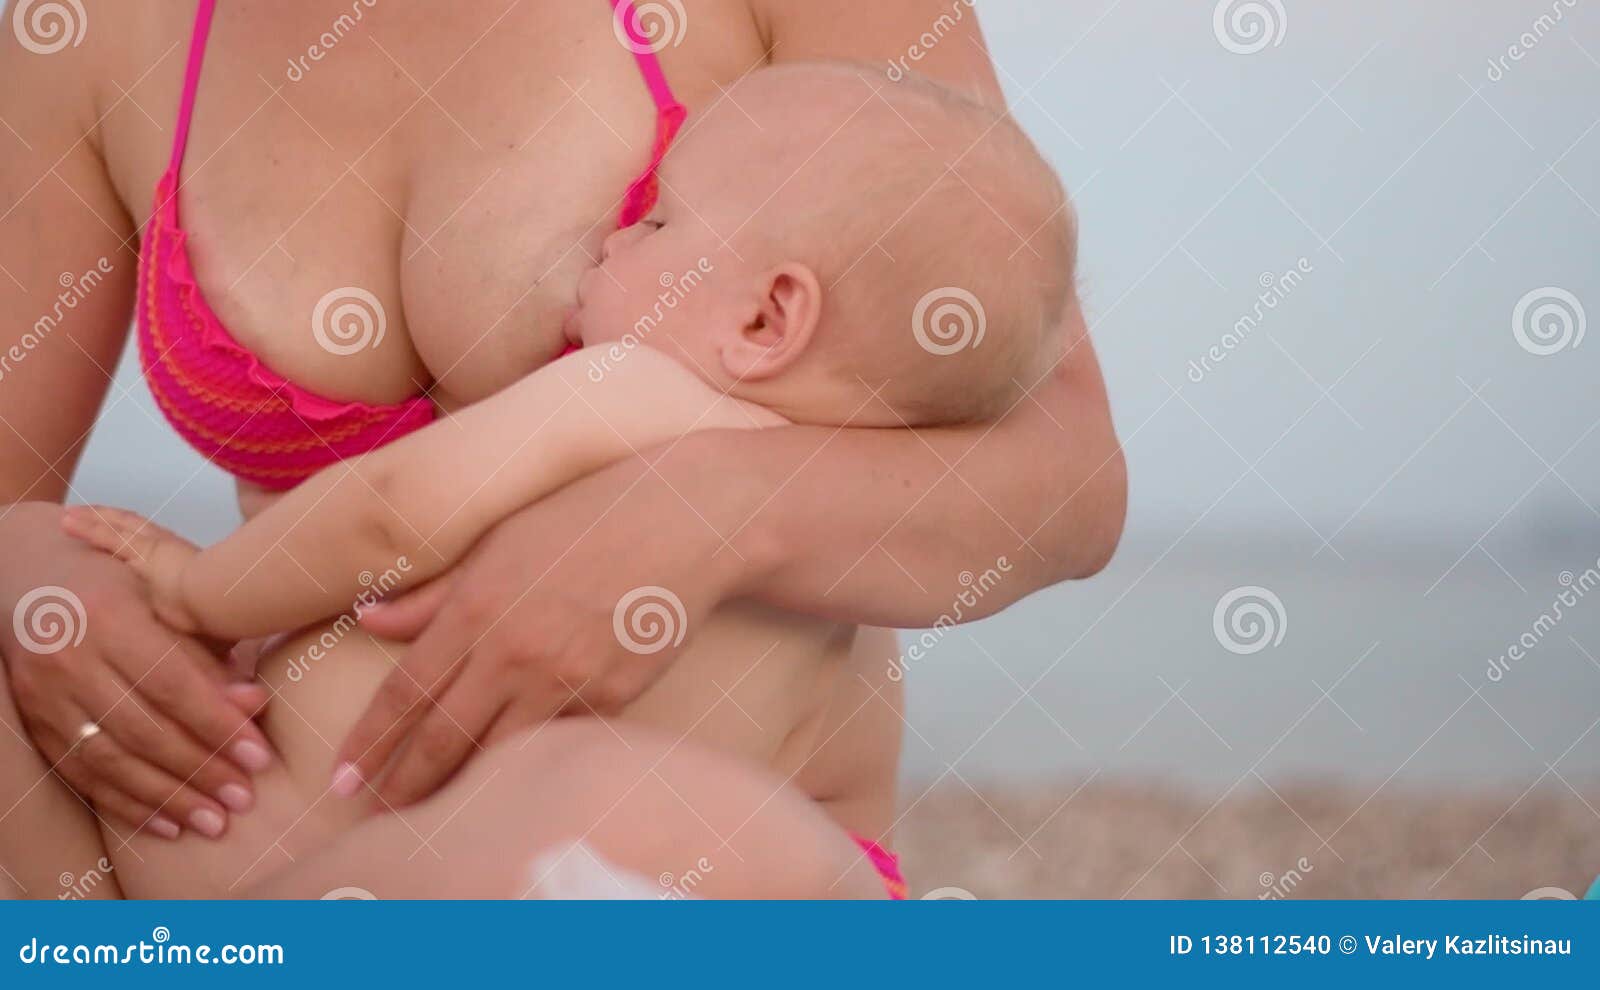 сын массирует грудь мамы фото 53